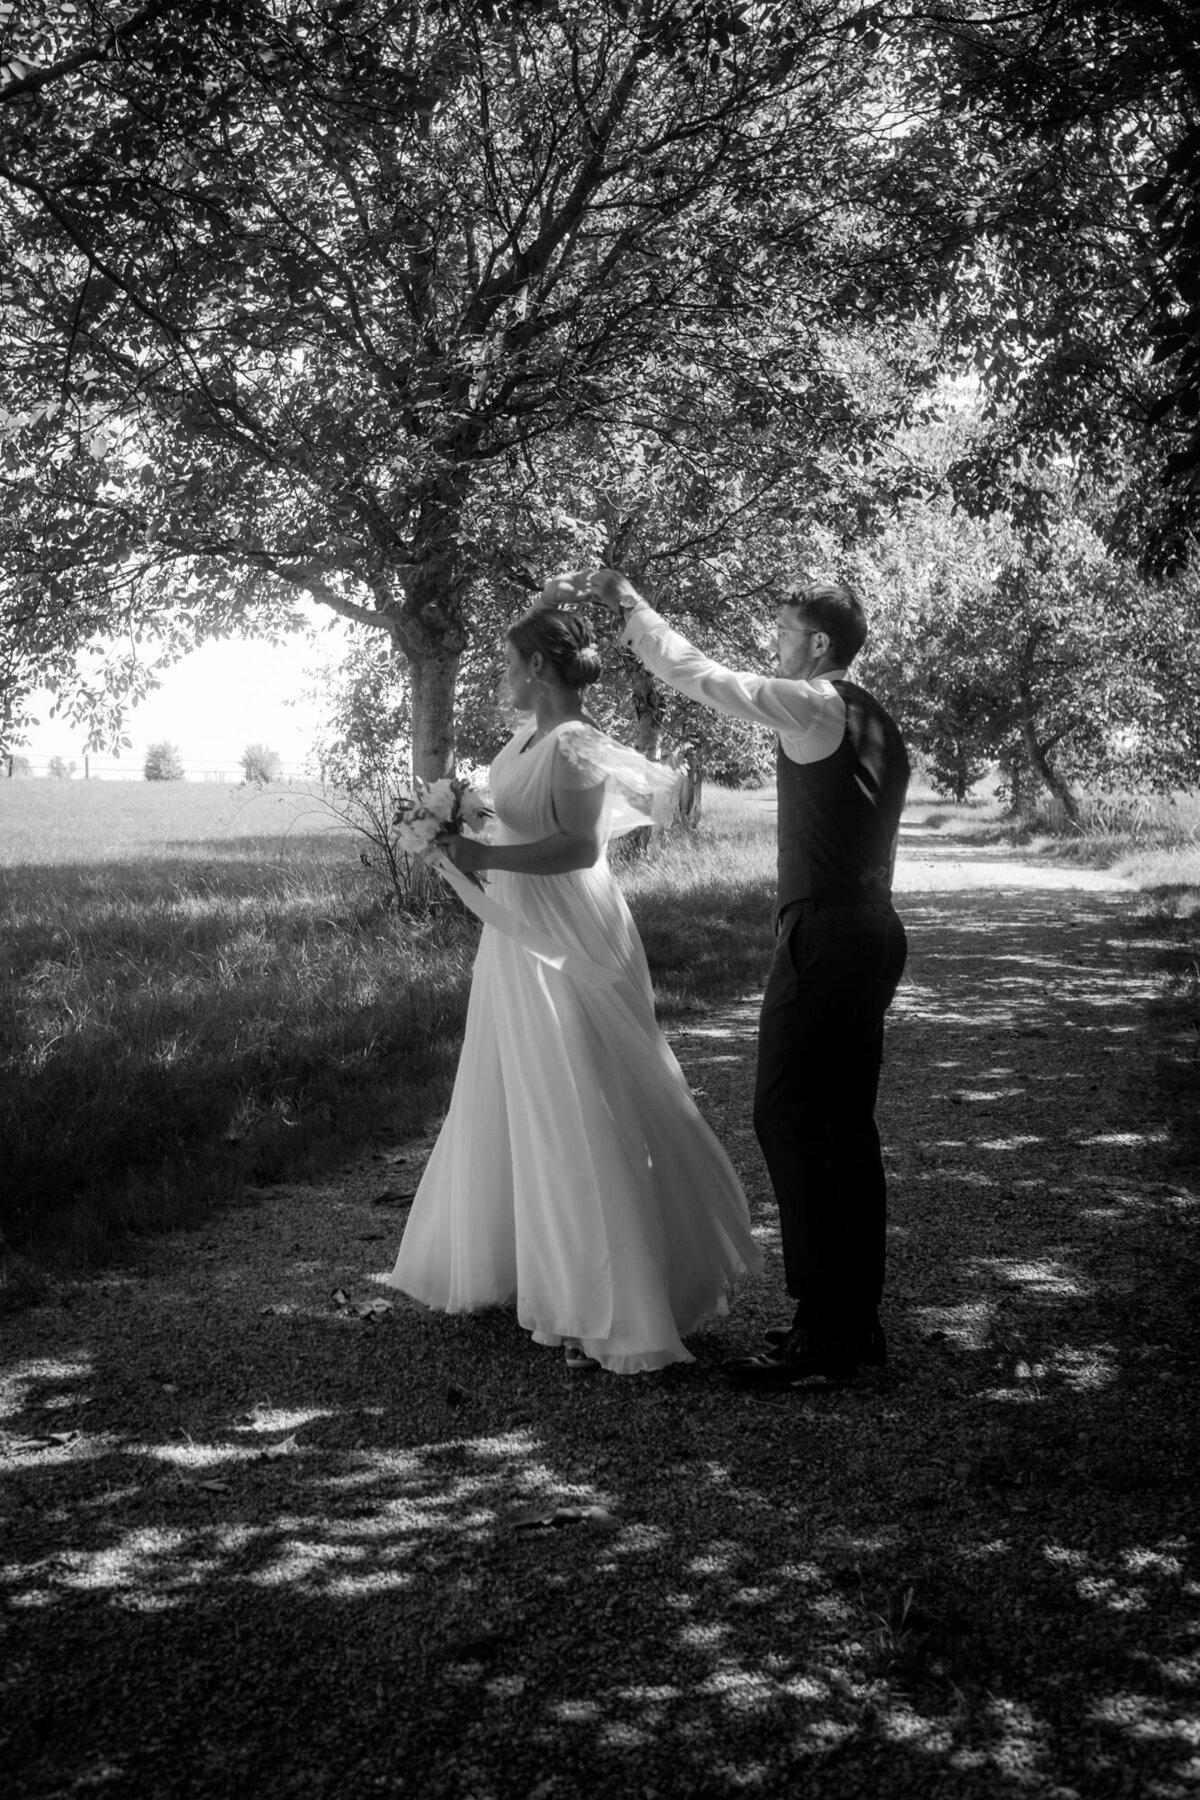 Das Hochzeitspaar tanzt auf einem Feldweg. Der Bräutigam dreht seine Braut im Kreis.